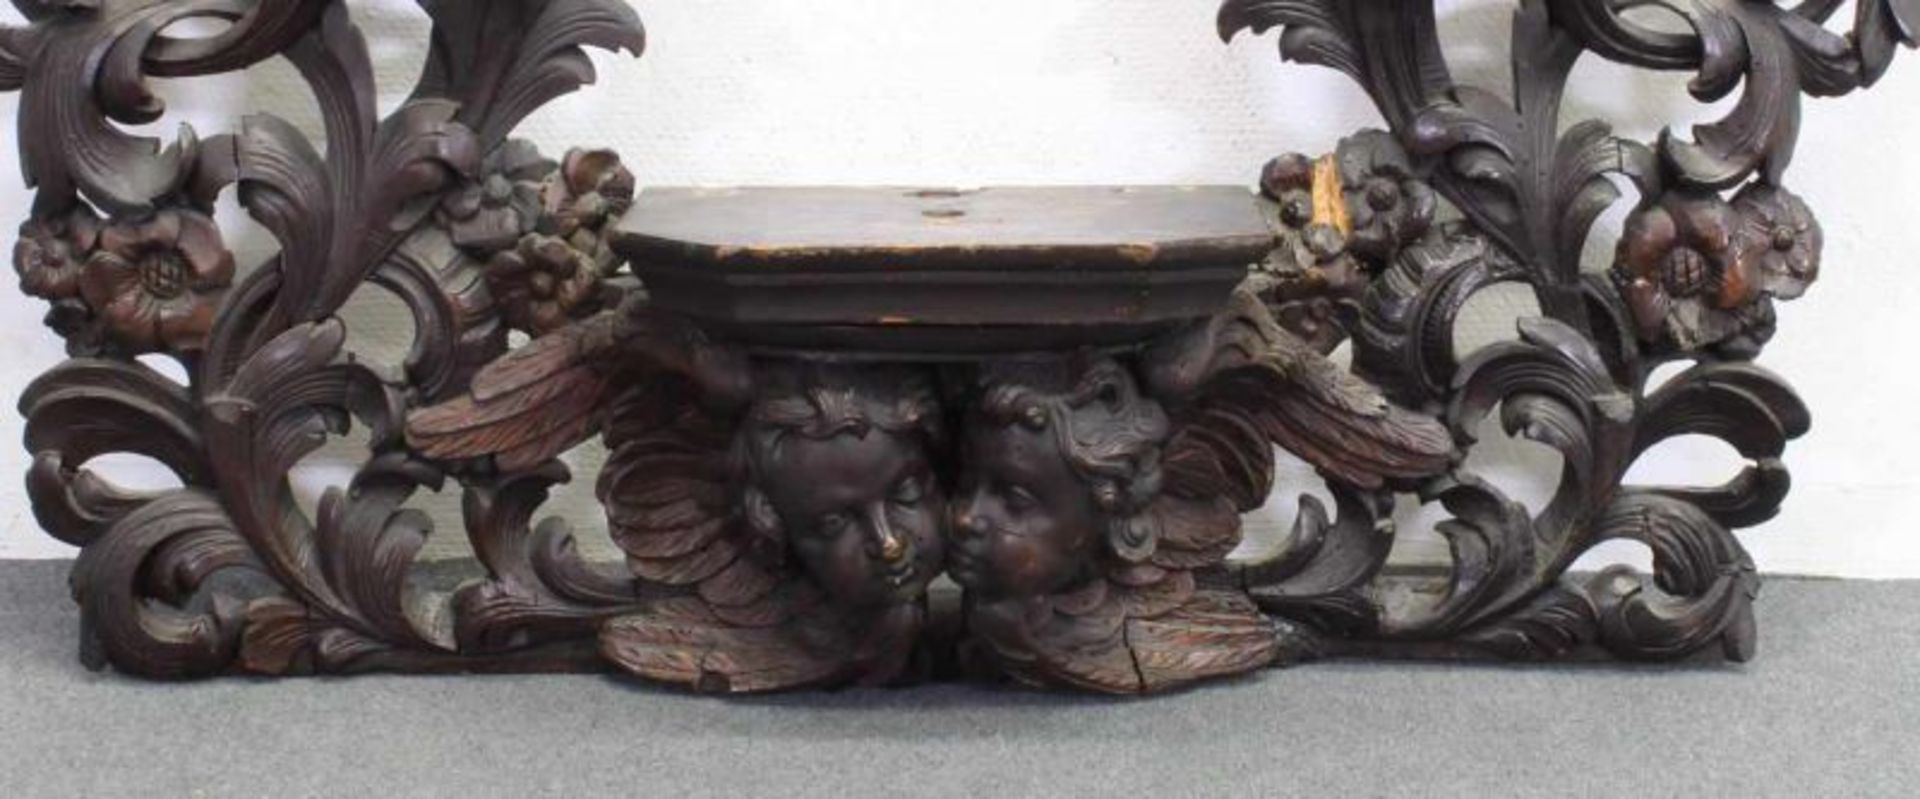 Große Skulpturenkonsole mit Puttenköpfen und Akanthusrahmen, Holz geschnitzt, Barockstil, 19. Jh., - Image 2 of 2